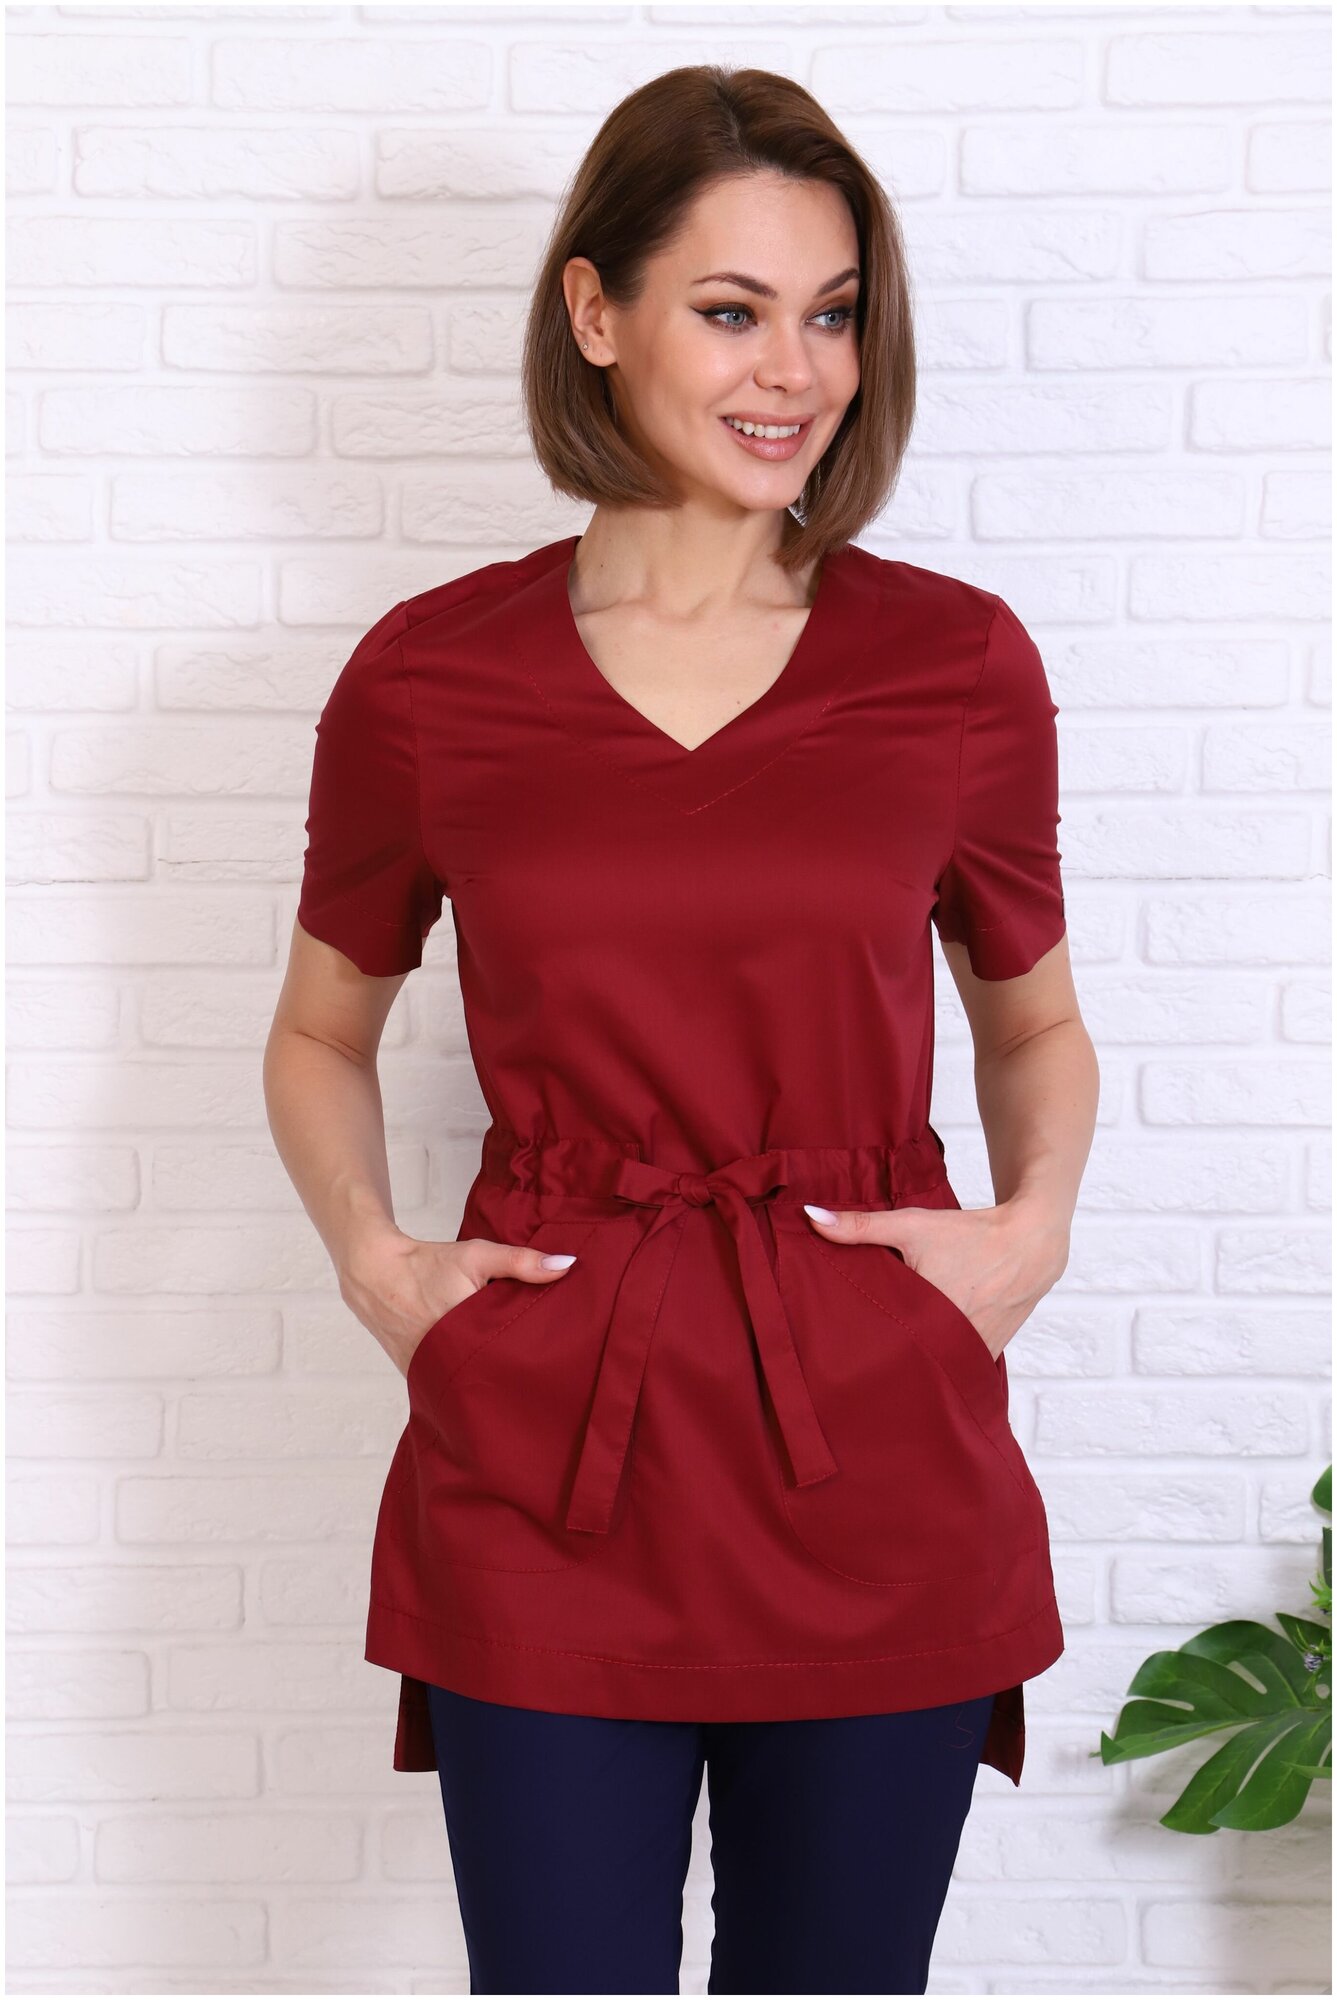 Туника/блузка медицинская женская Альба-С бордовая с поясом больших размеров. Куртка/рубашка рабочая удлиненная с разрезами стрейч. Спецодежда для женщин. Размер 42